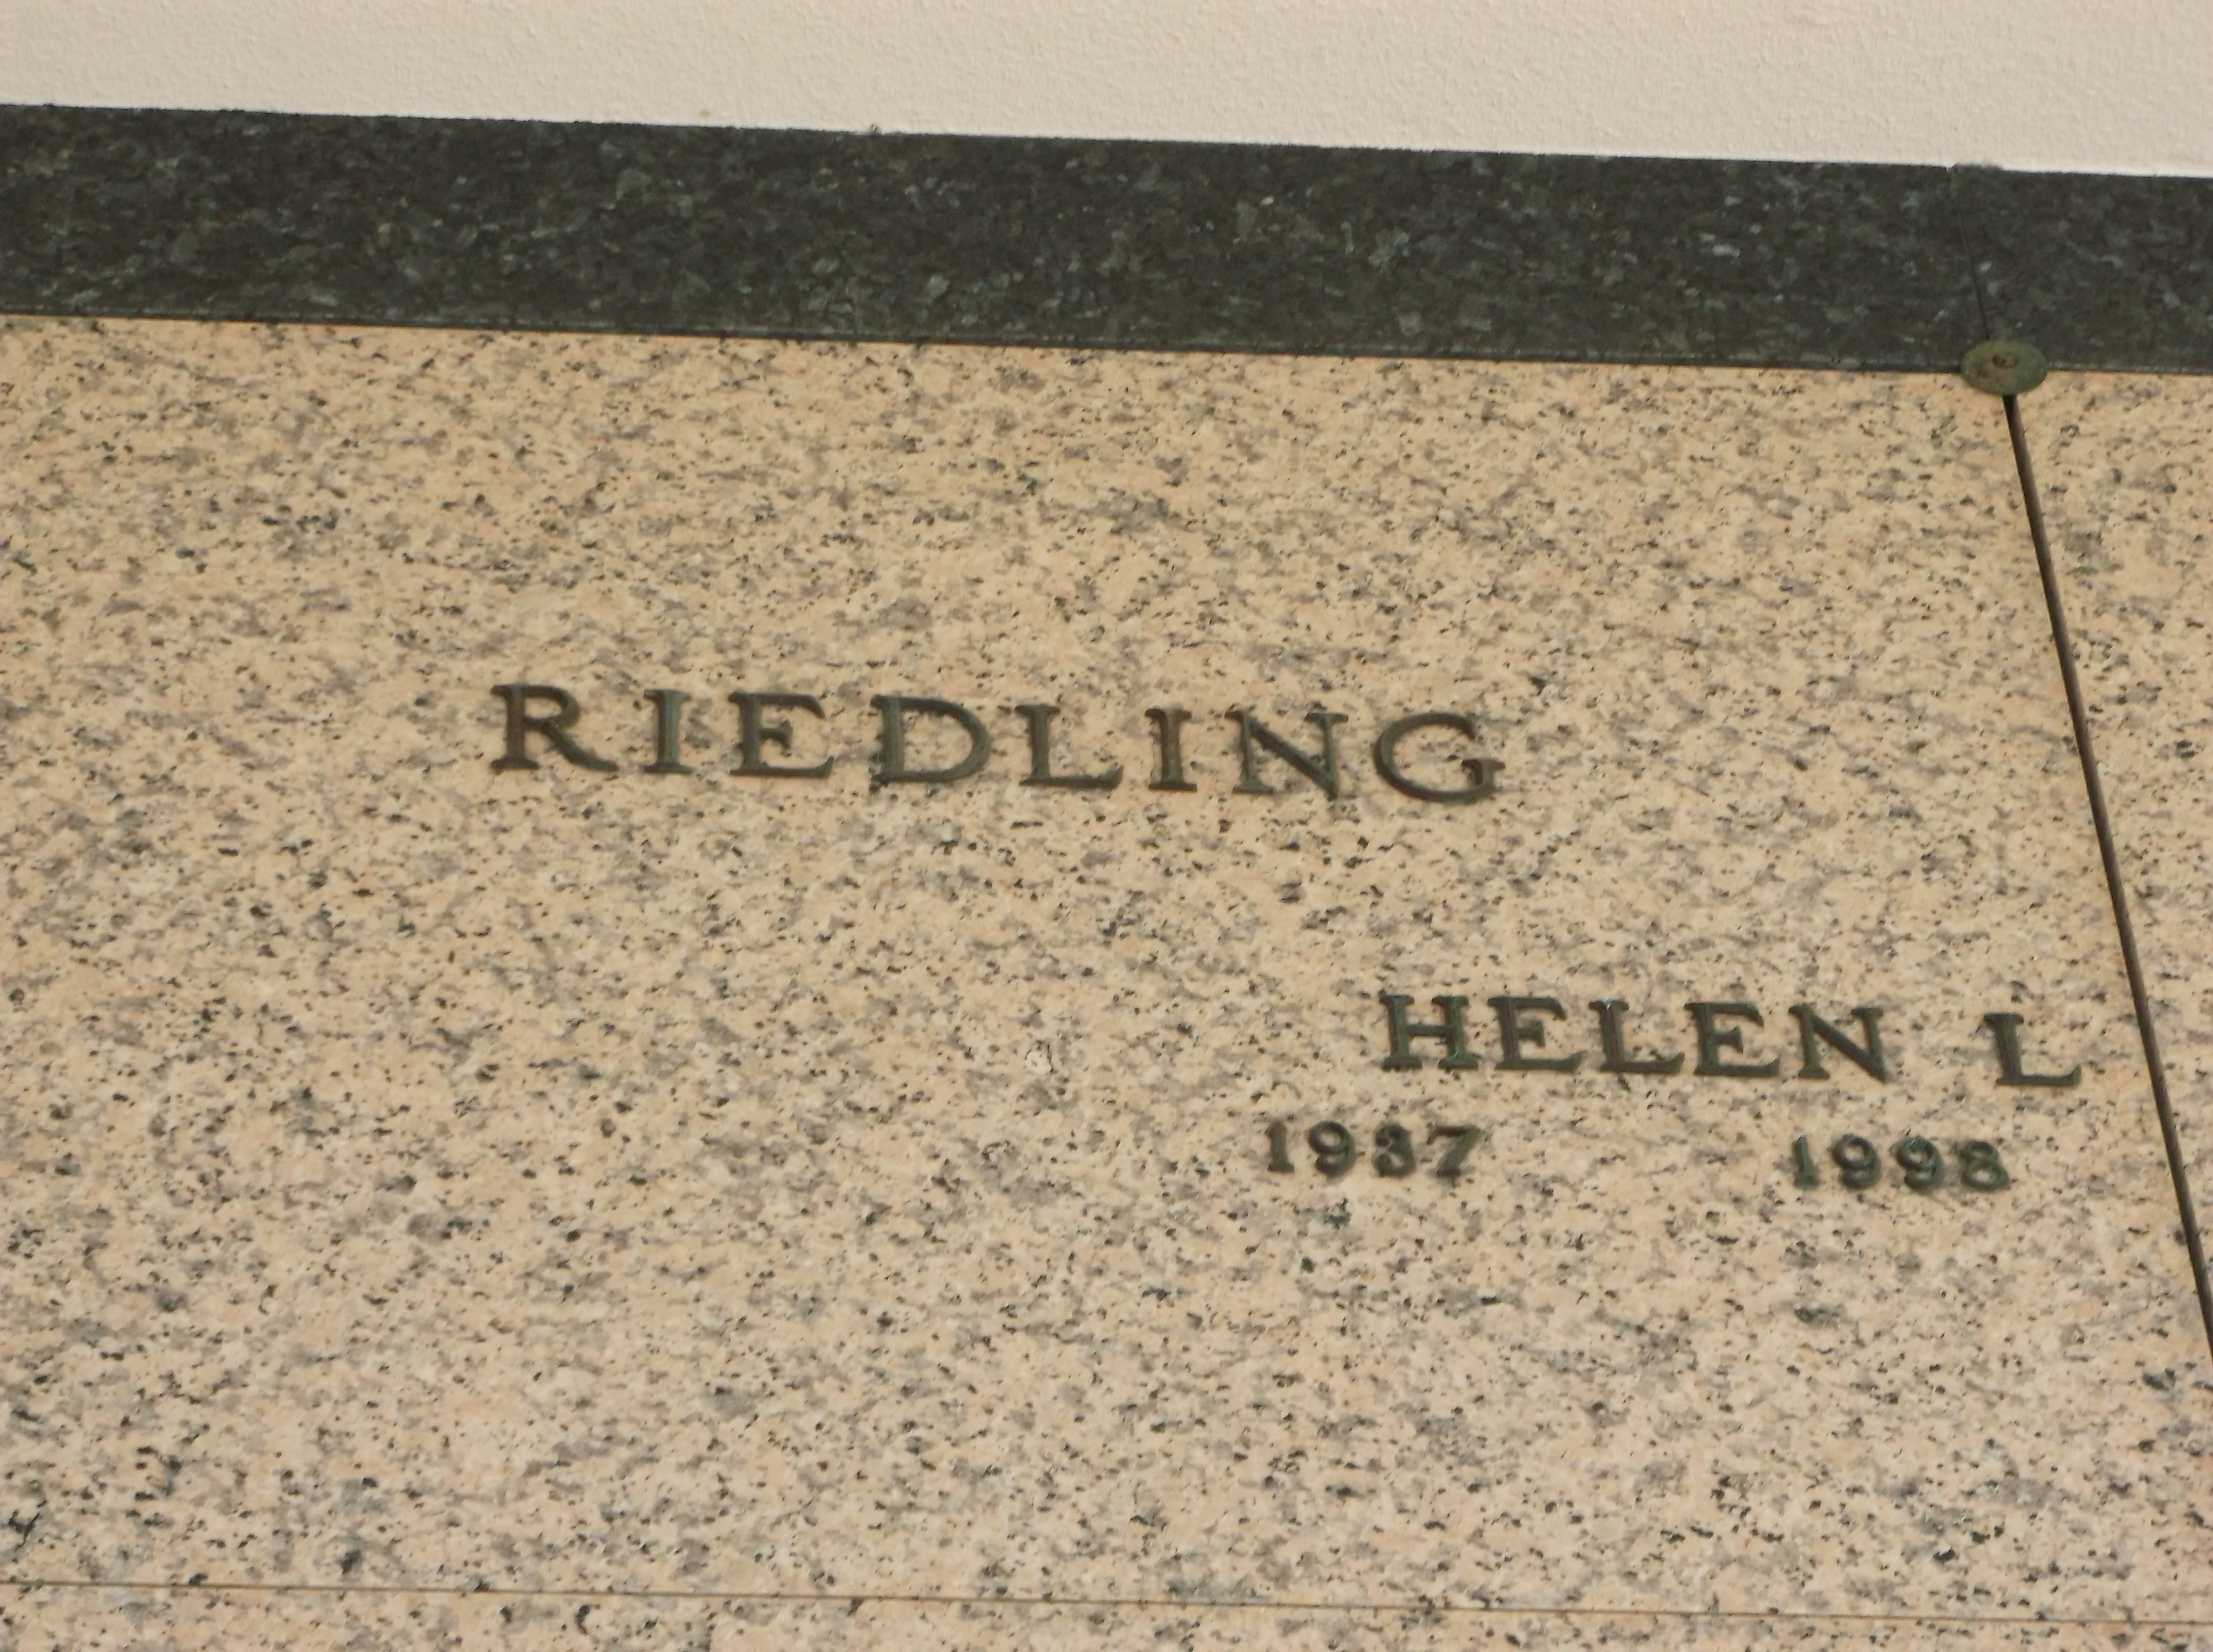 Helen L Riedling